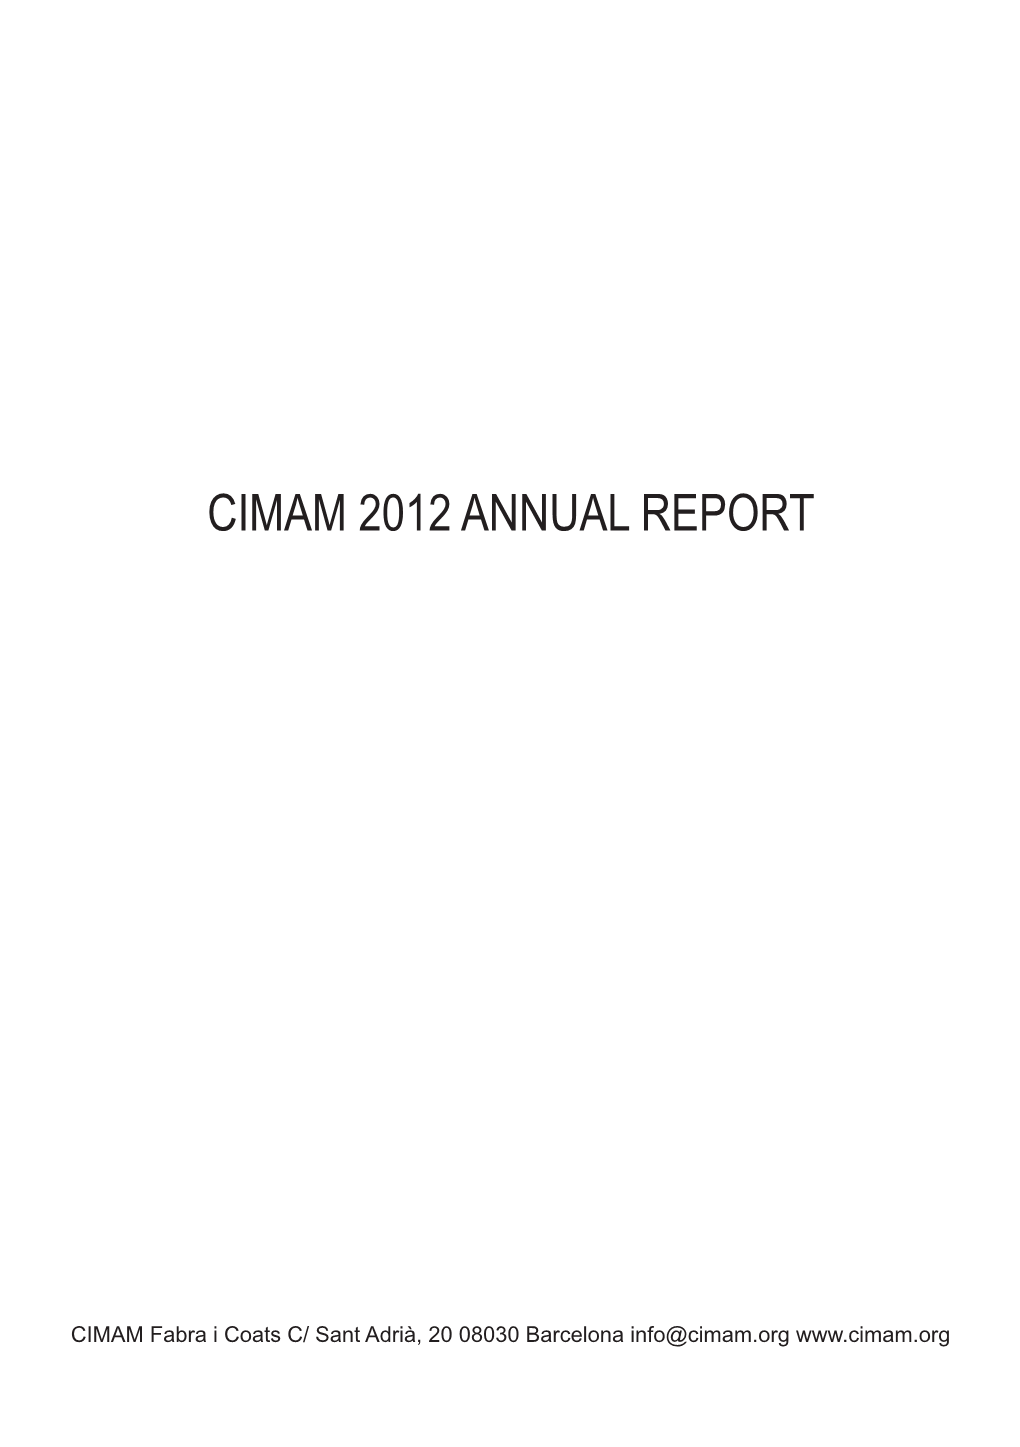 Cimam 2012 Annual Report